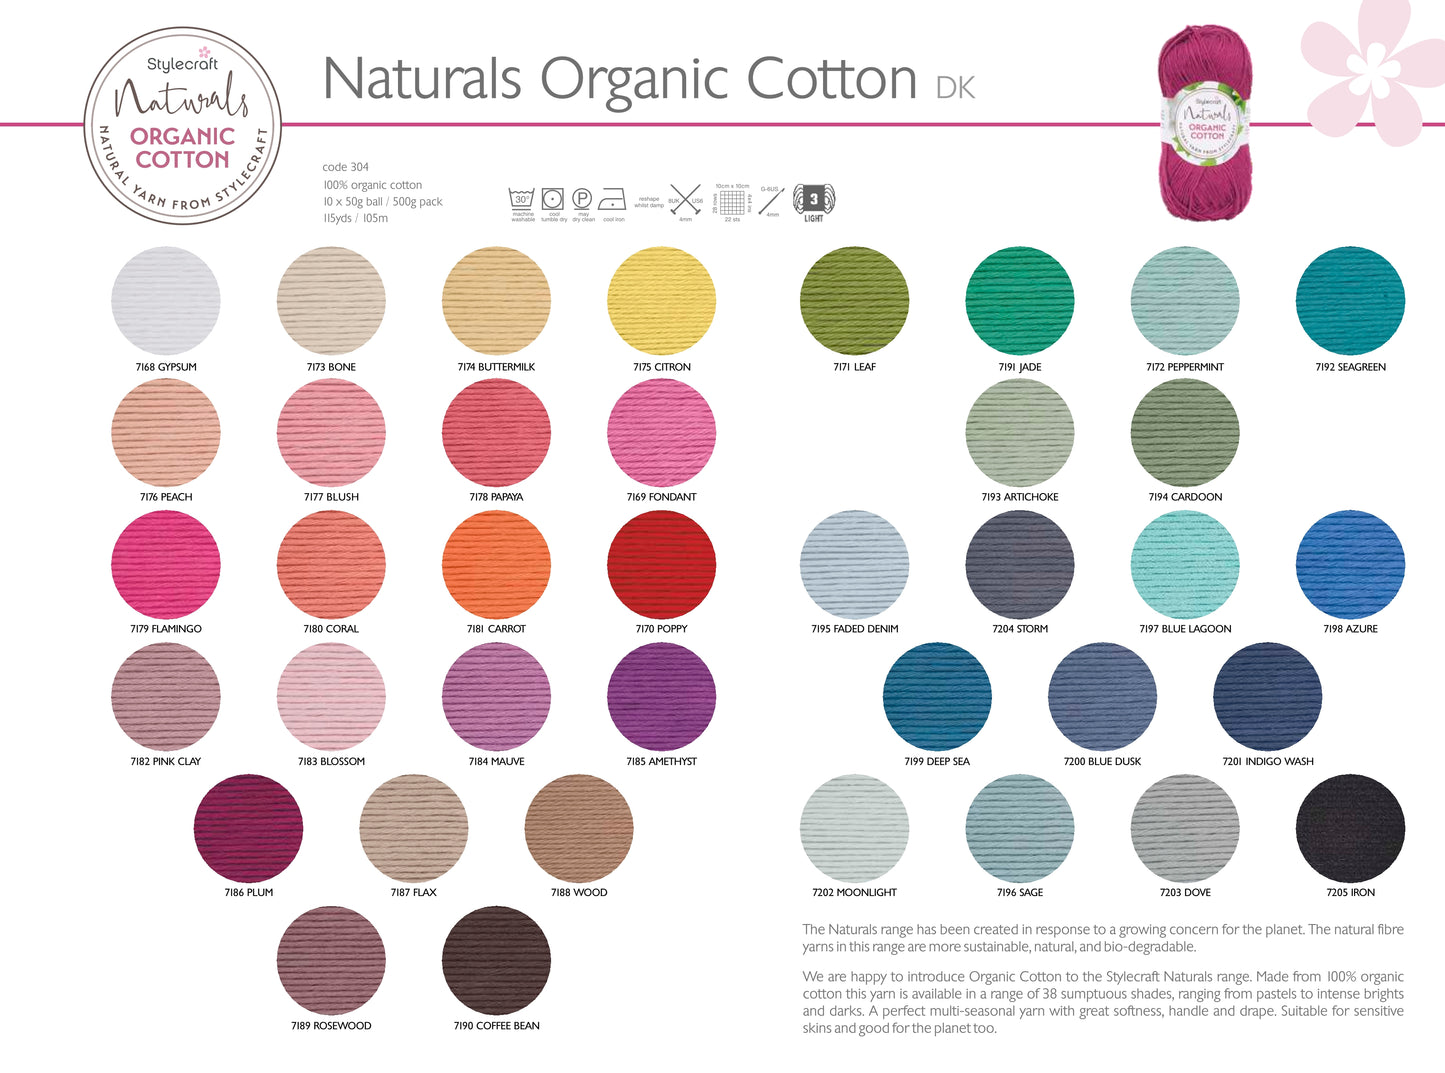 Stylecraft Naturals Organic Cotton Double Knit - 7168 Gypsum